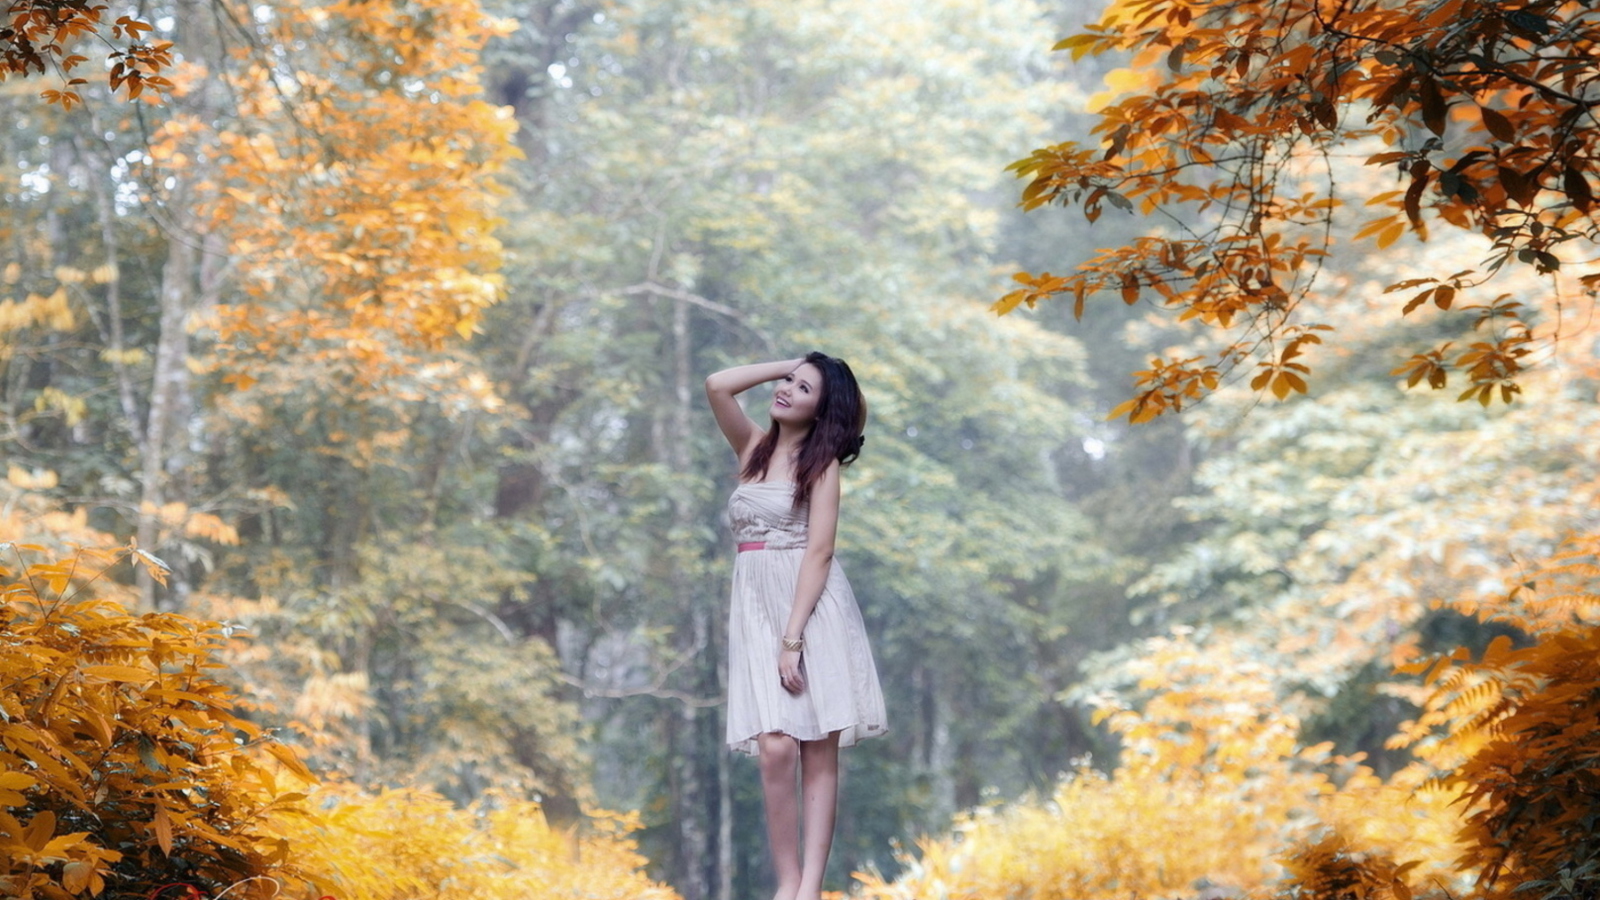 Das Girl In Autumn Forest Wallpaper 1600x900